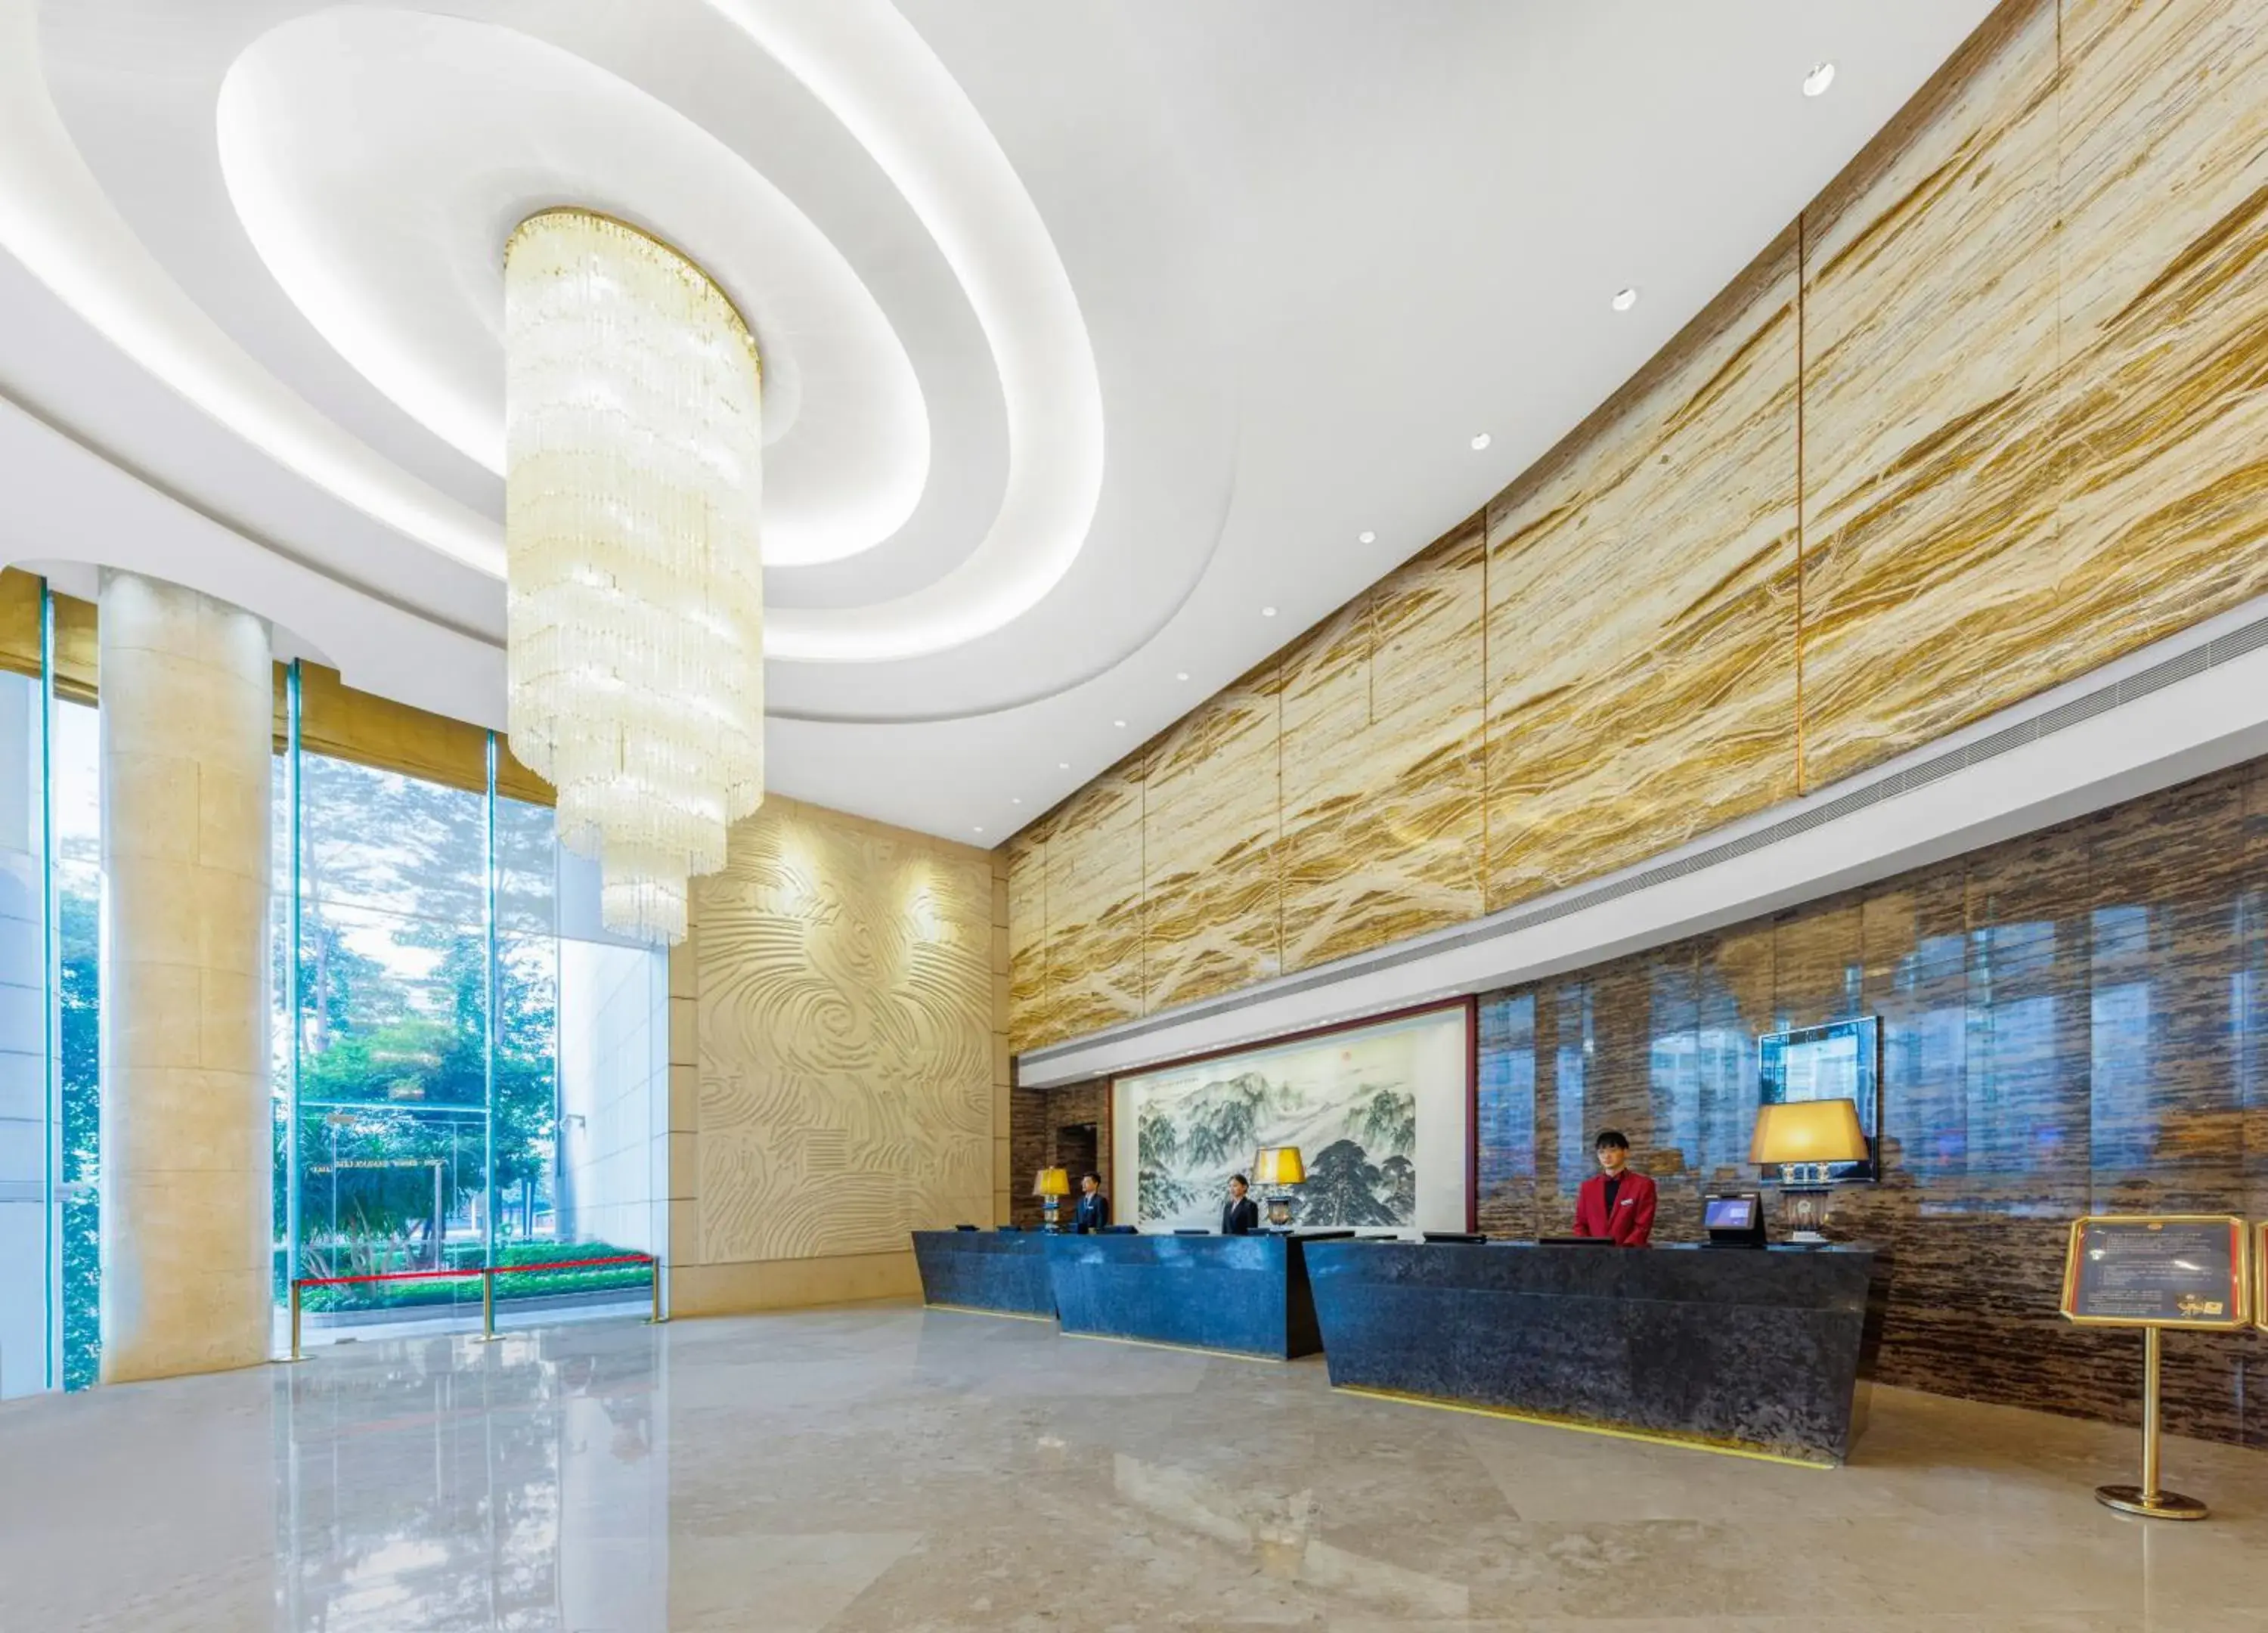 Lobby or reception, Lobby/Reception in Vanburgh Hotel